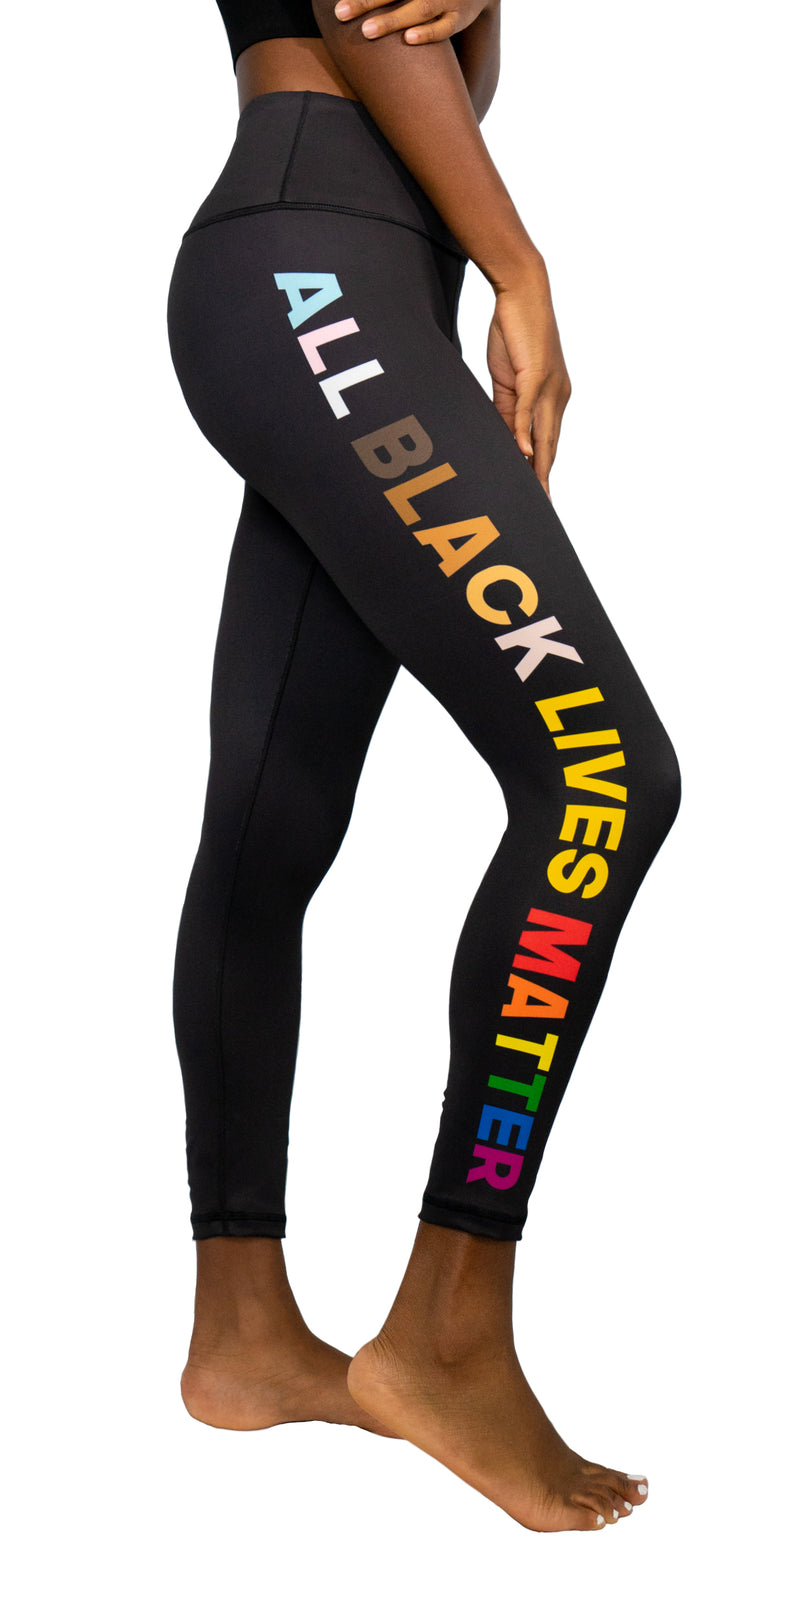 All Black Lives Matter - Legging